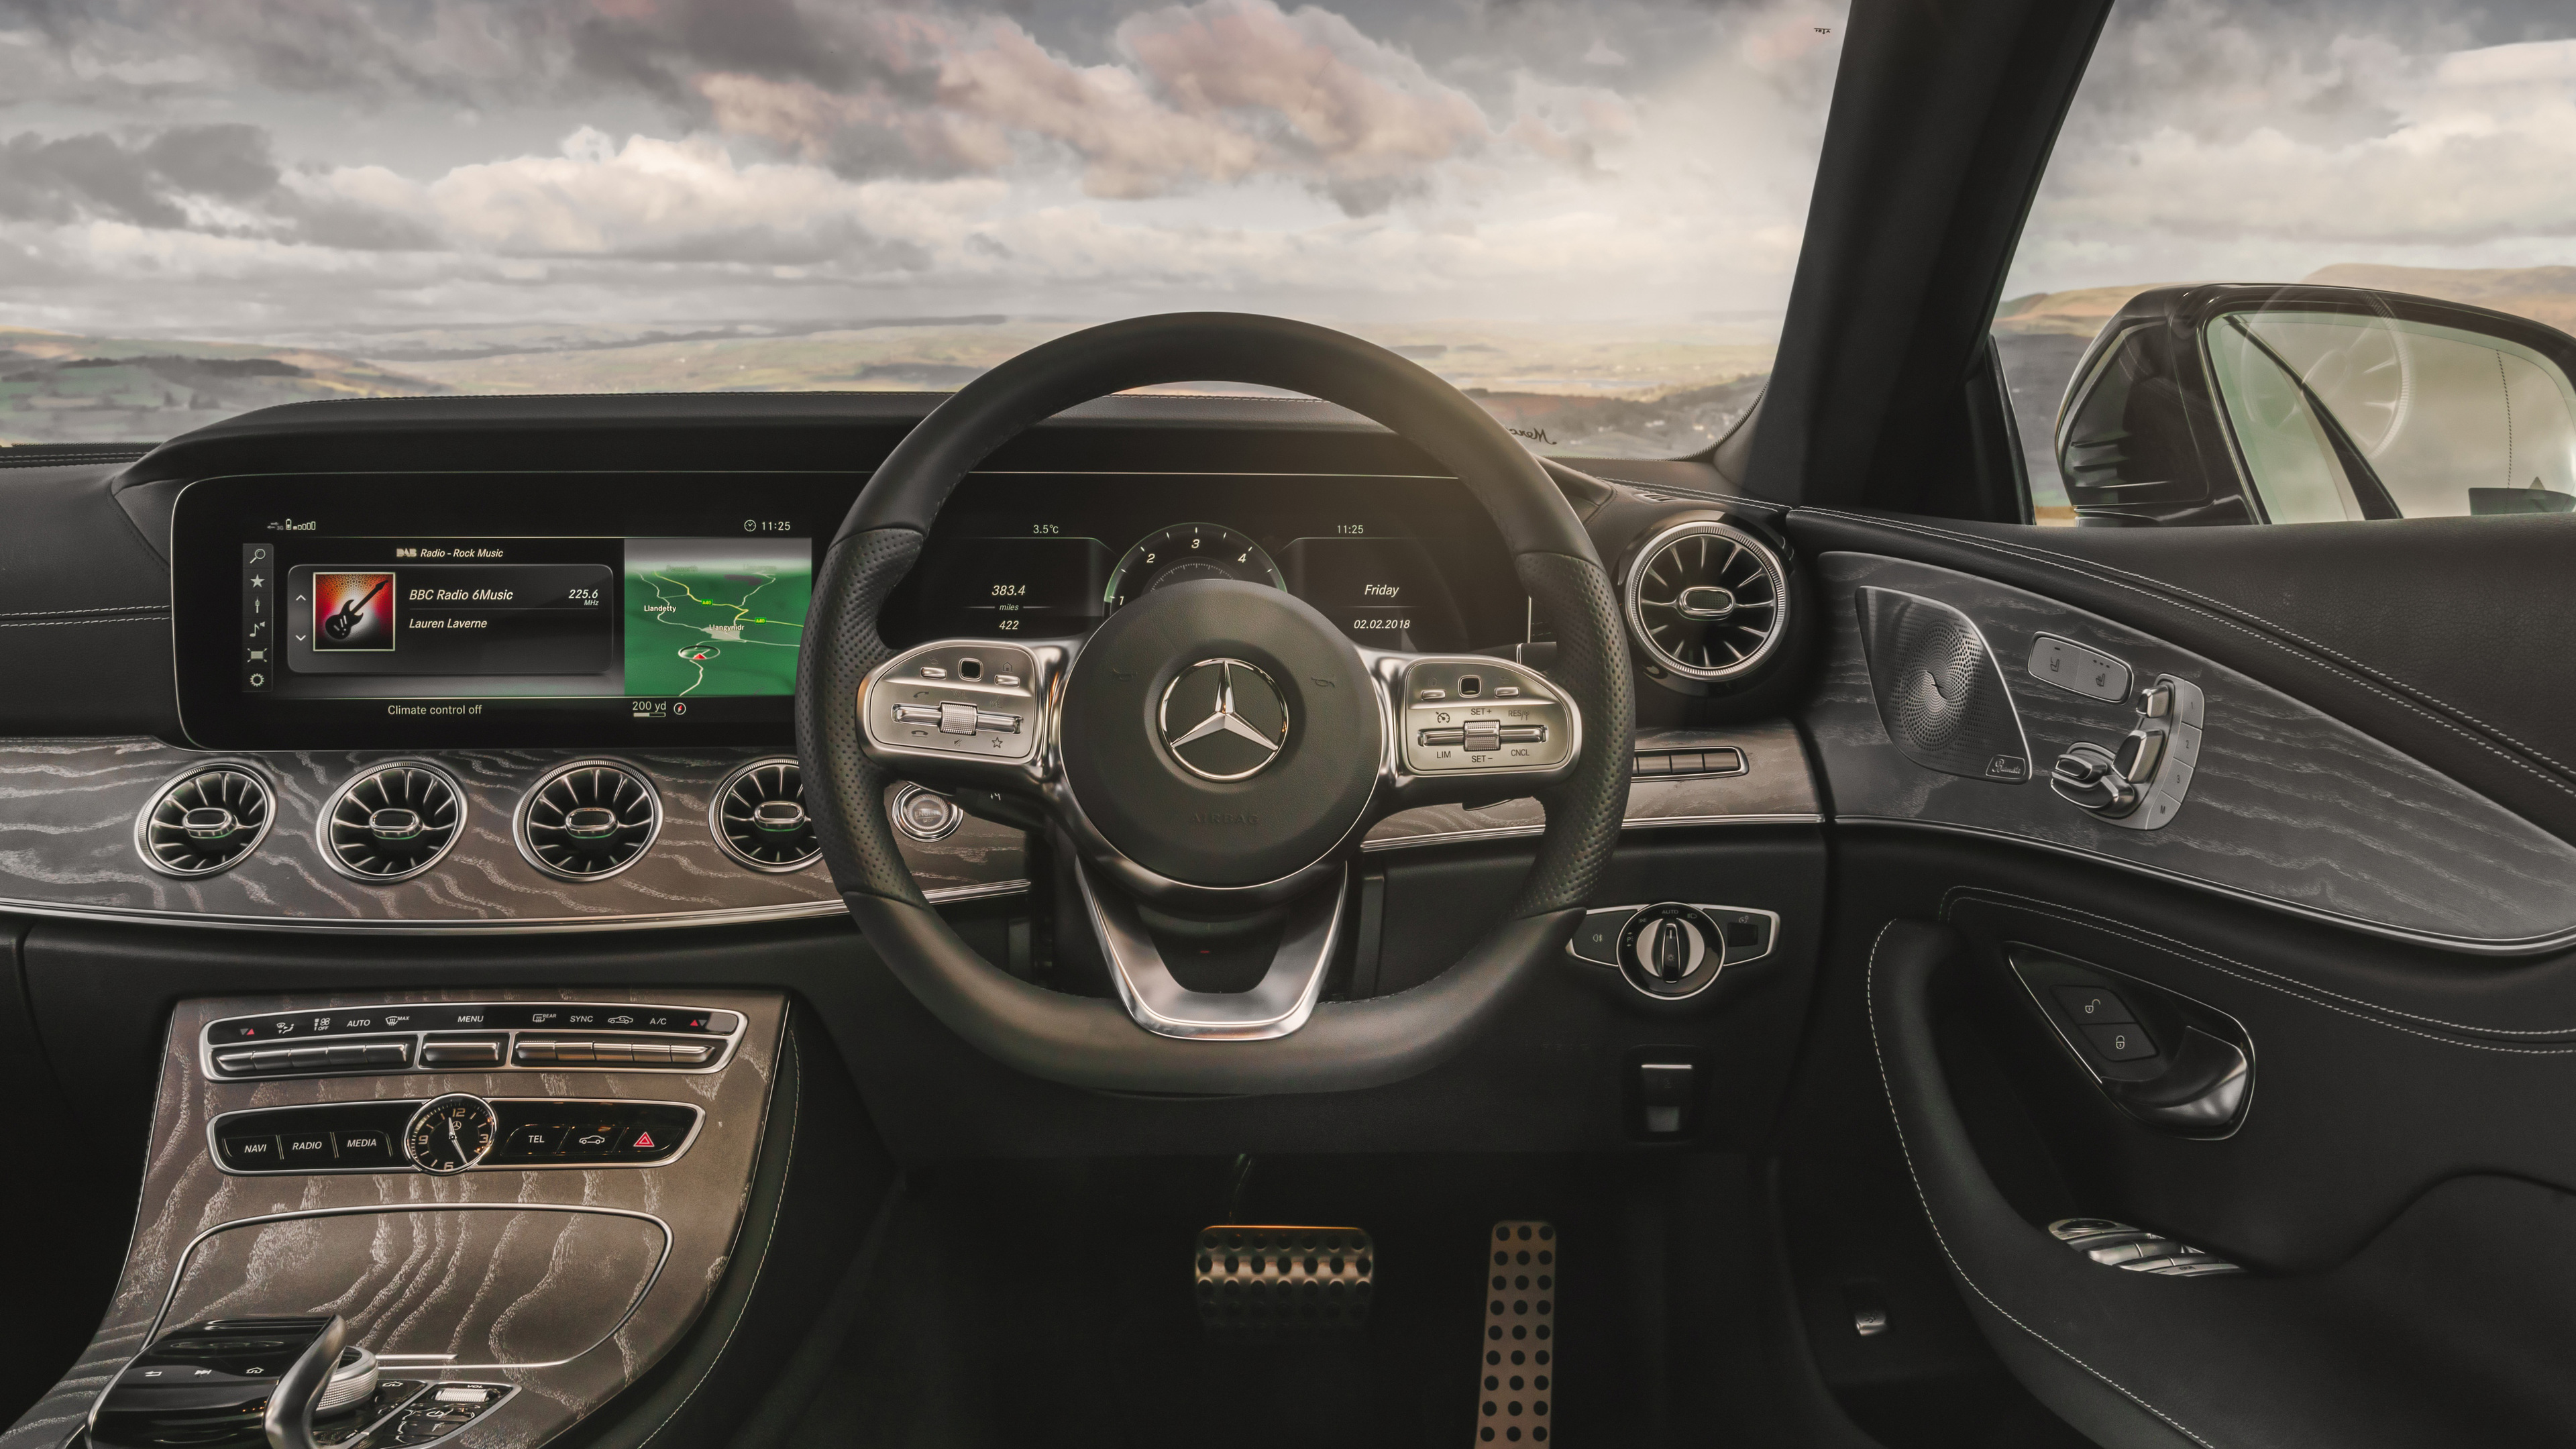 Wallpaper 4k Mercedes Benz Cls 400 D Amg Interior 2018 Cars